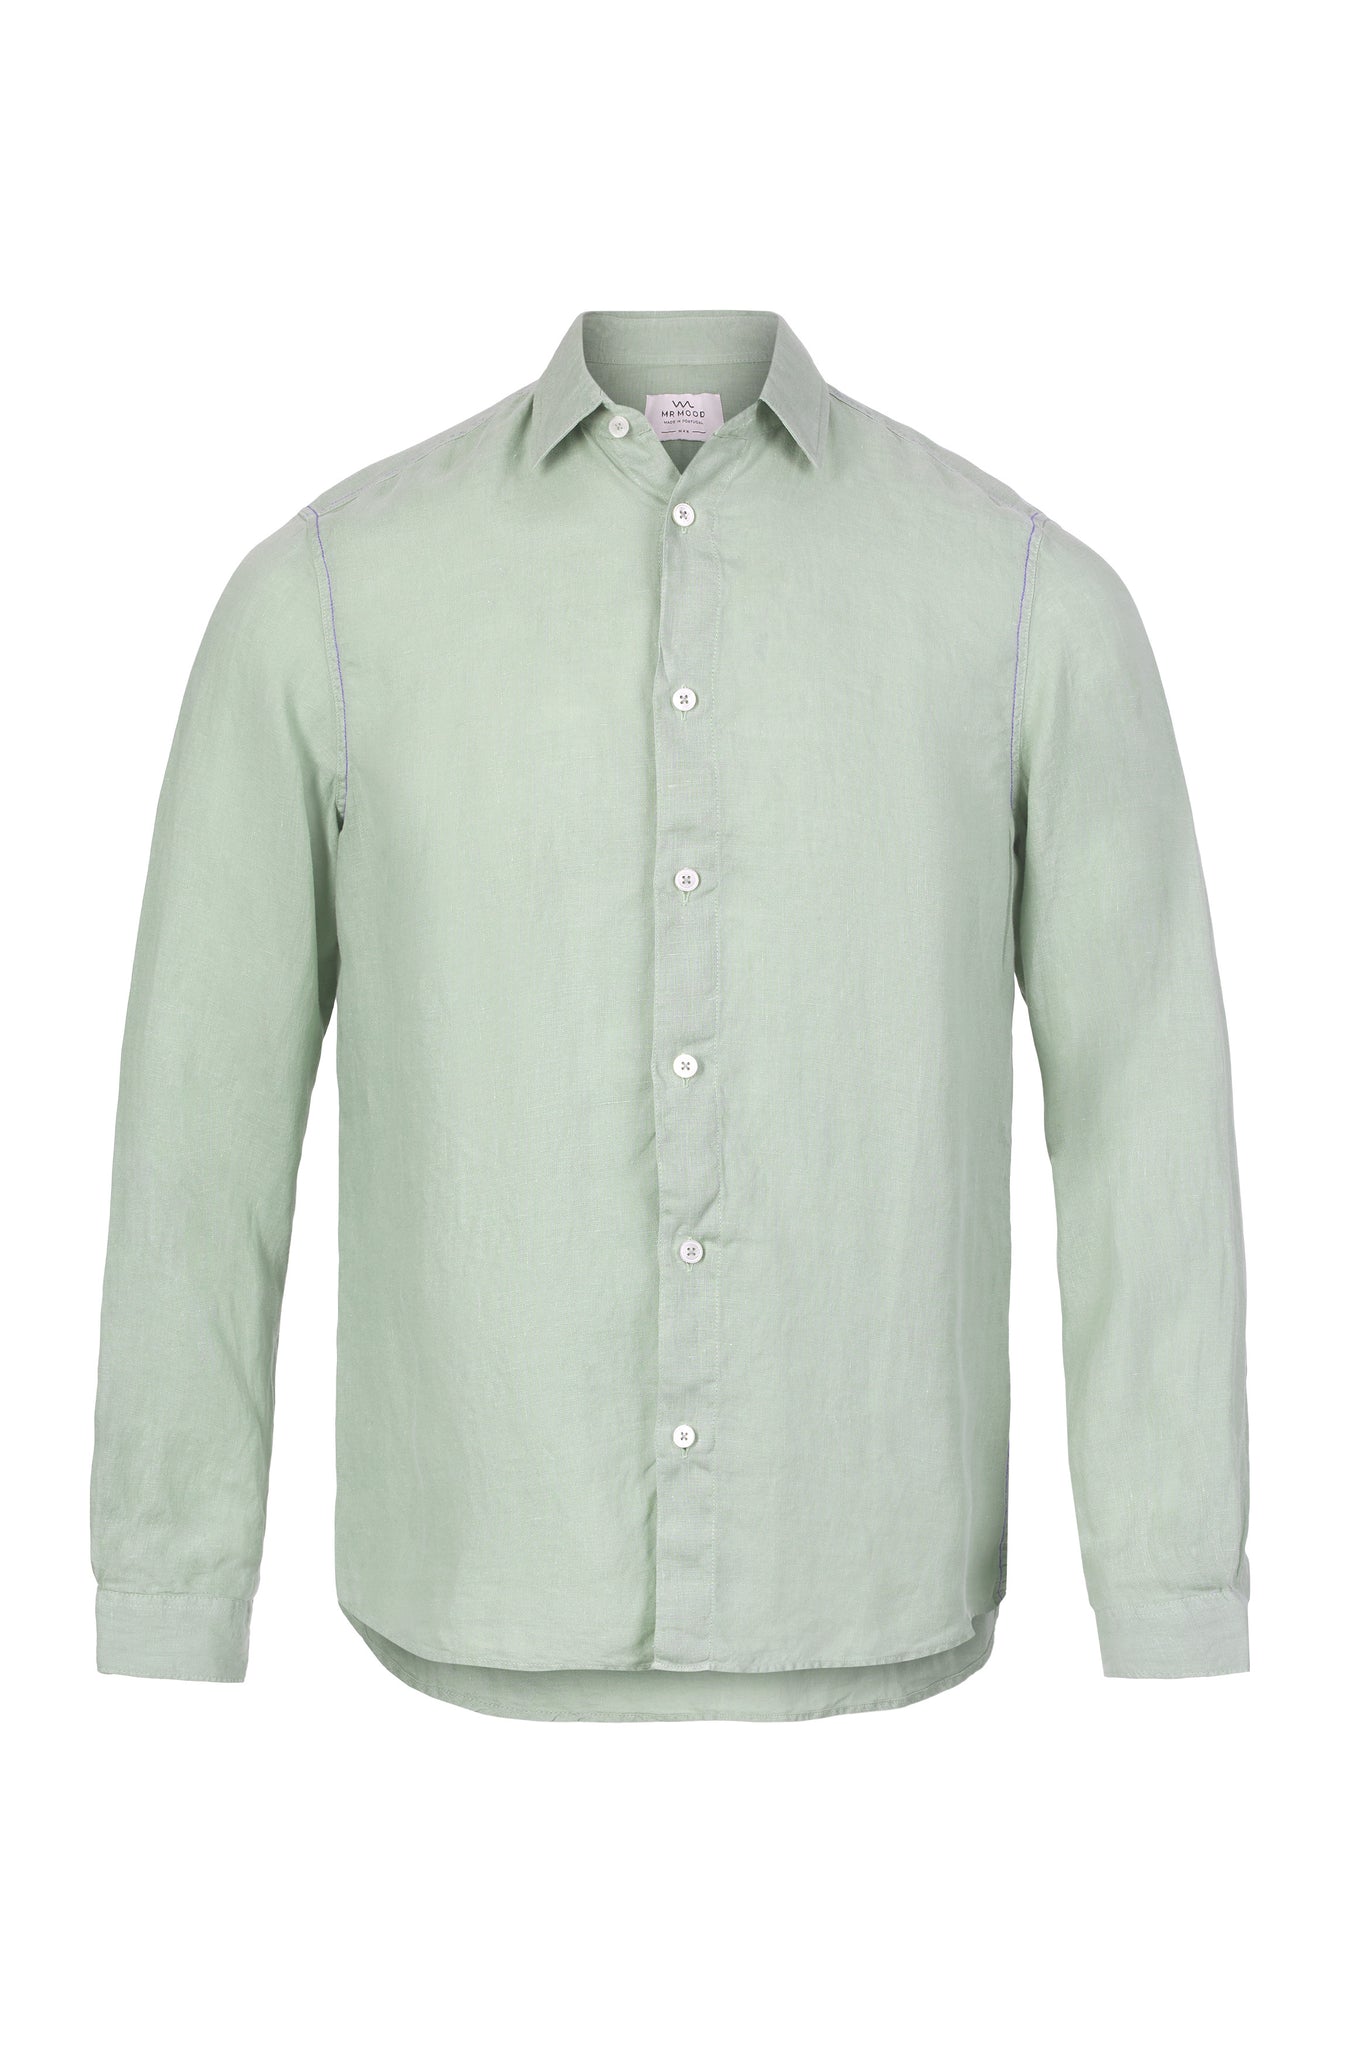 Mr Linen Shirt Seagrass